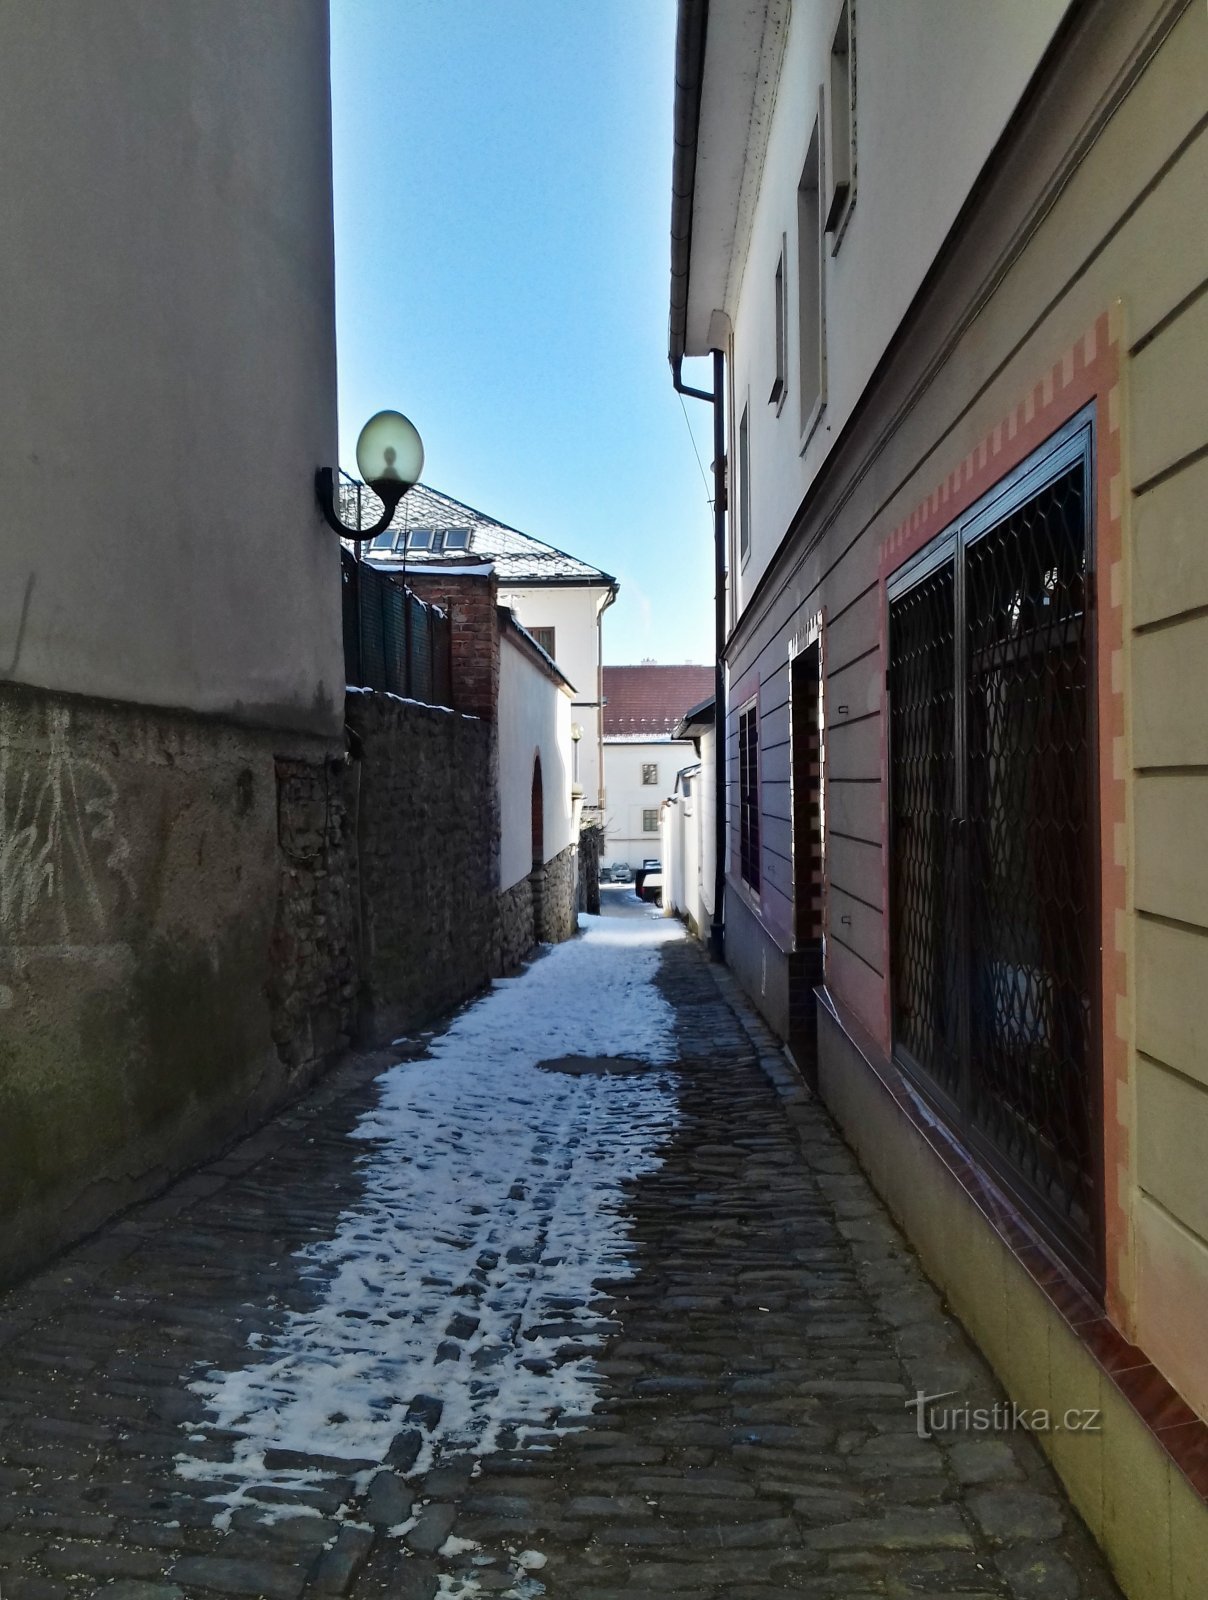 Šumperk – Zámecká ulička, kaupungin kapein katu